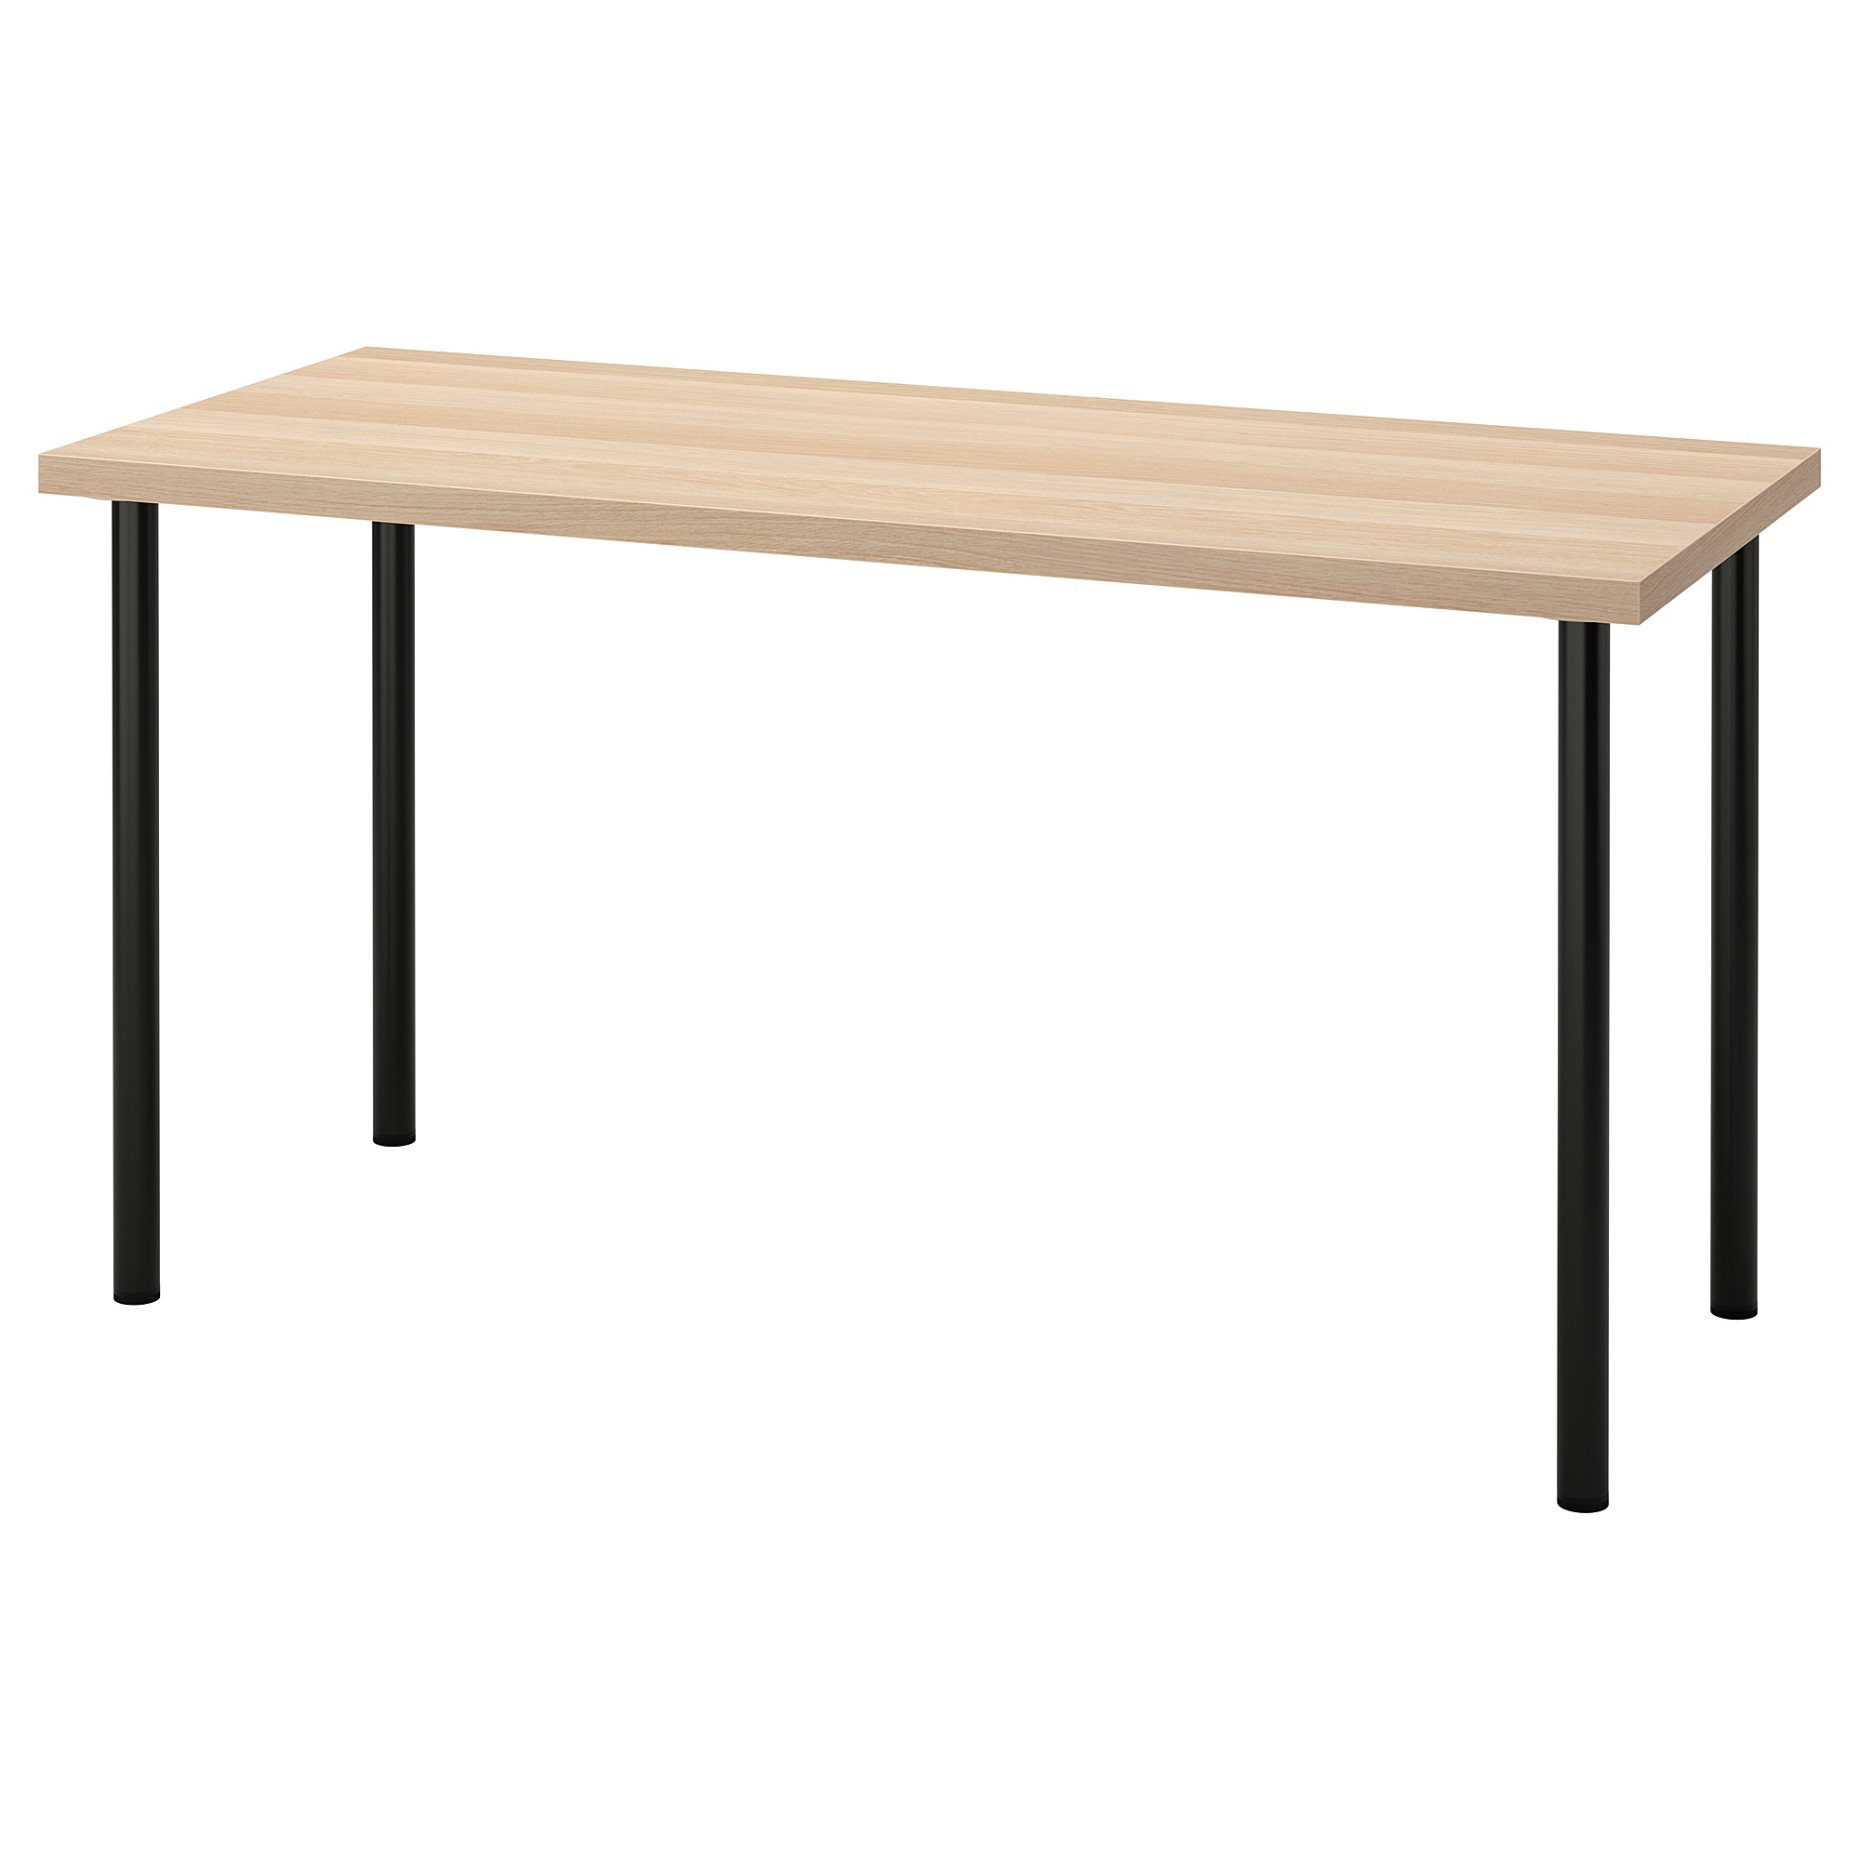 LAGKAPTEN/ADILS, desk, 140x60 cm, 594.172.52